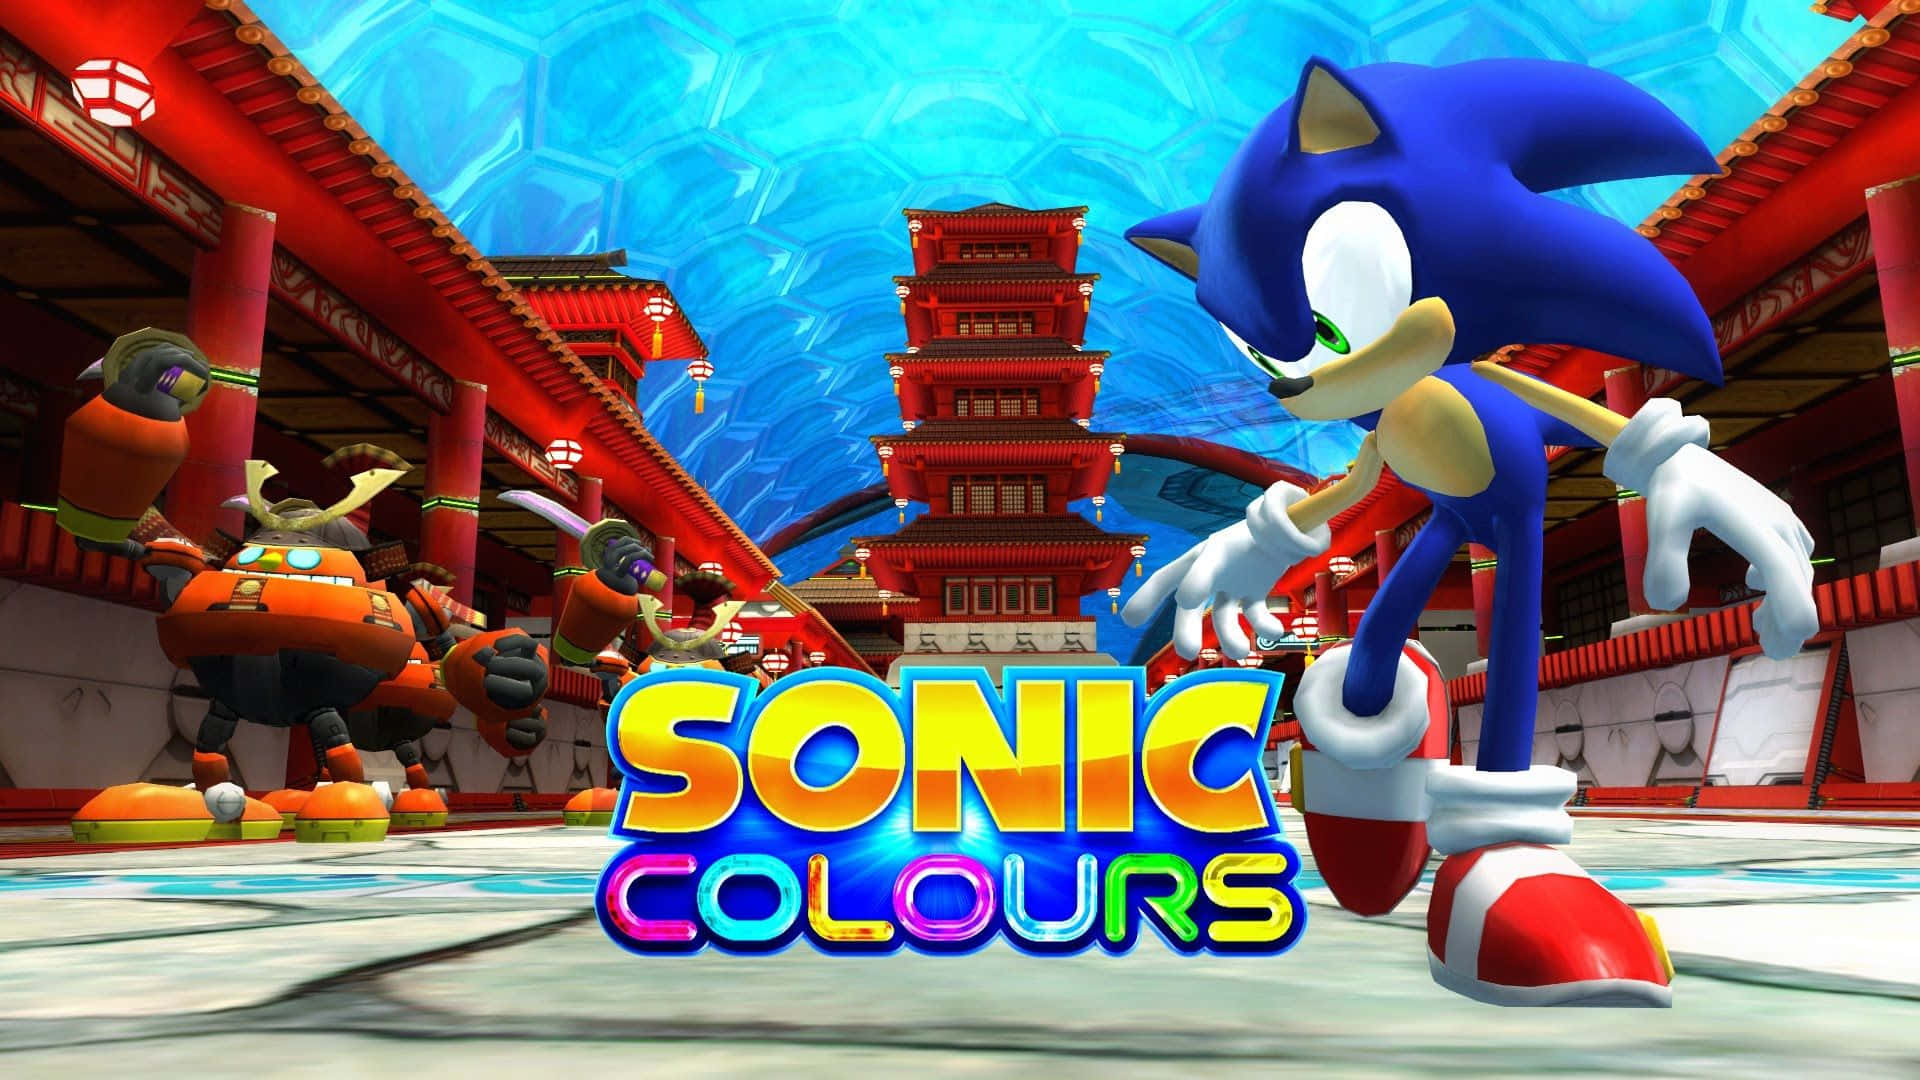 Den legendariske Sonic hastigt igennem den livlige og farverige verden af Sonic Colors. Wallpaper